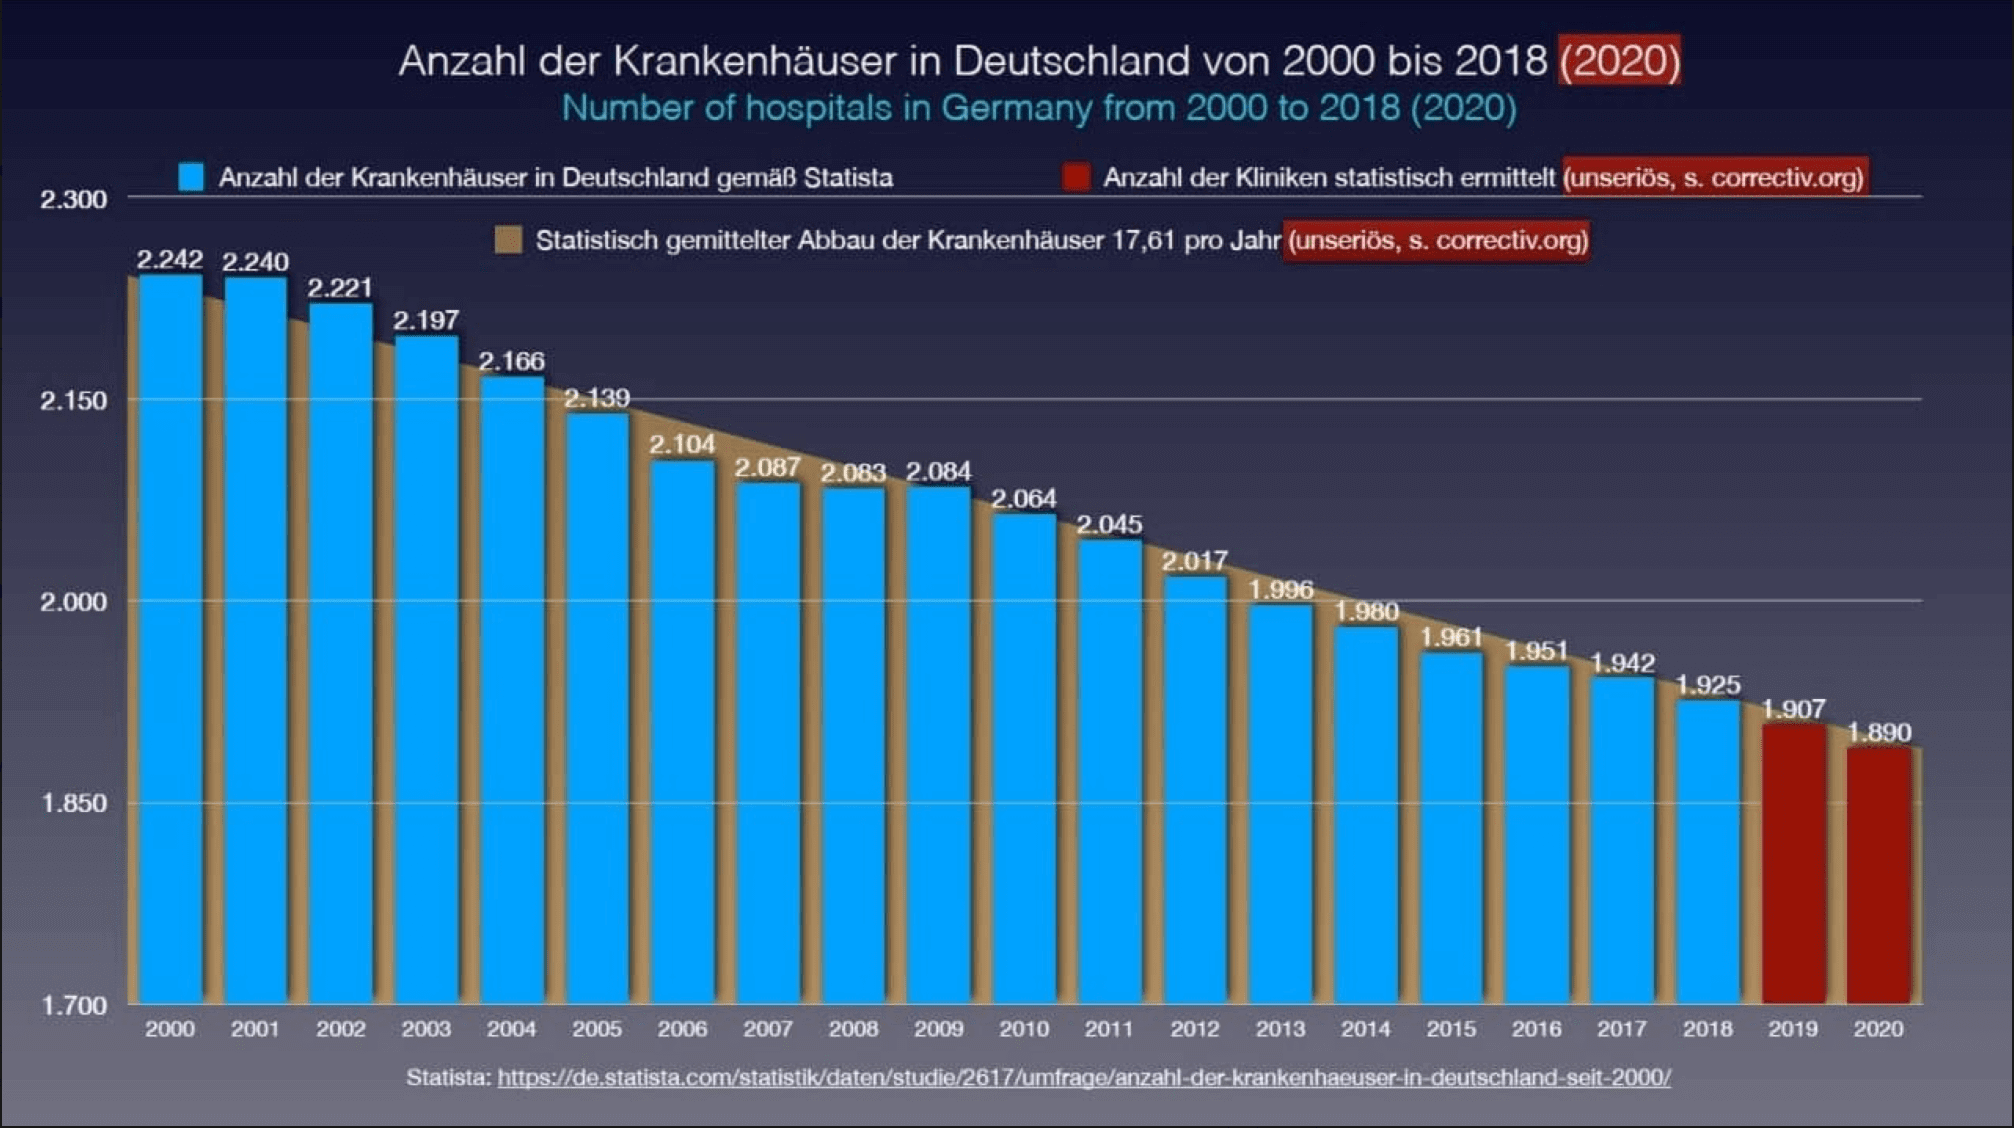 Die Anzahl der Krankenhäuser in Deutschland von 2000 bis 2018 wird irreführend dargestellt.